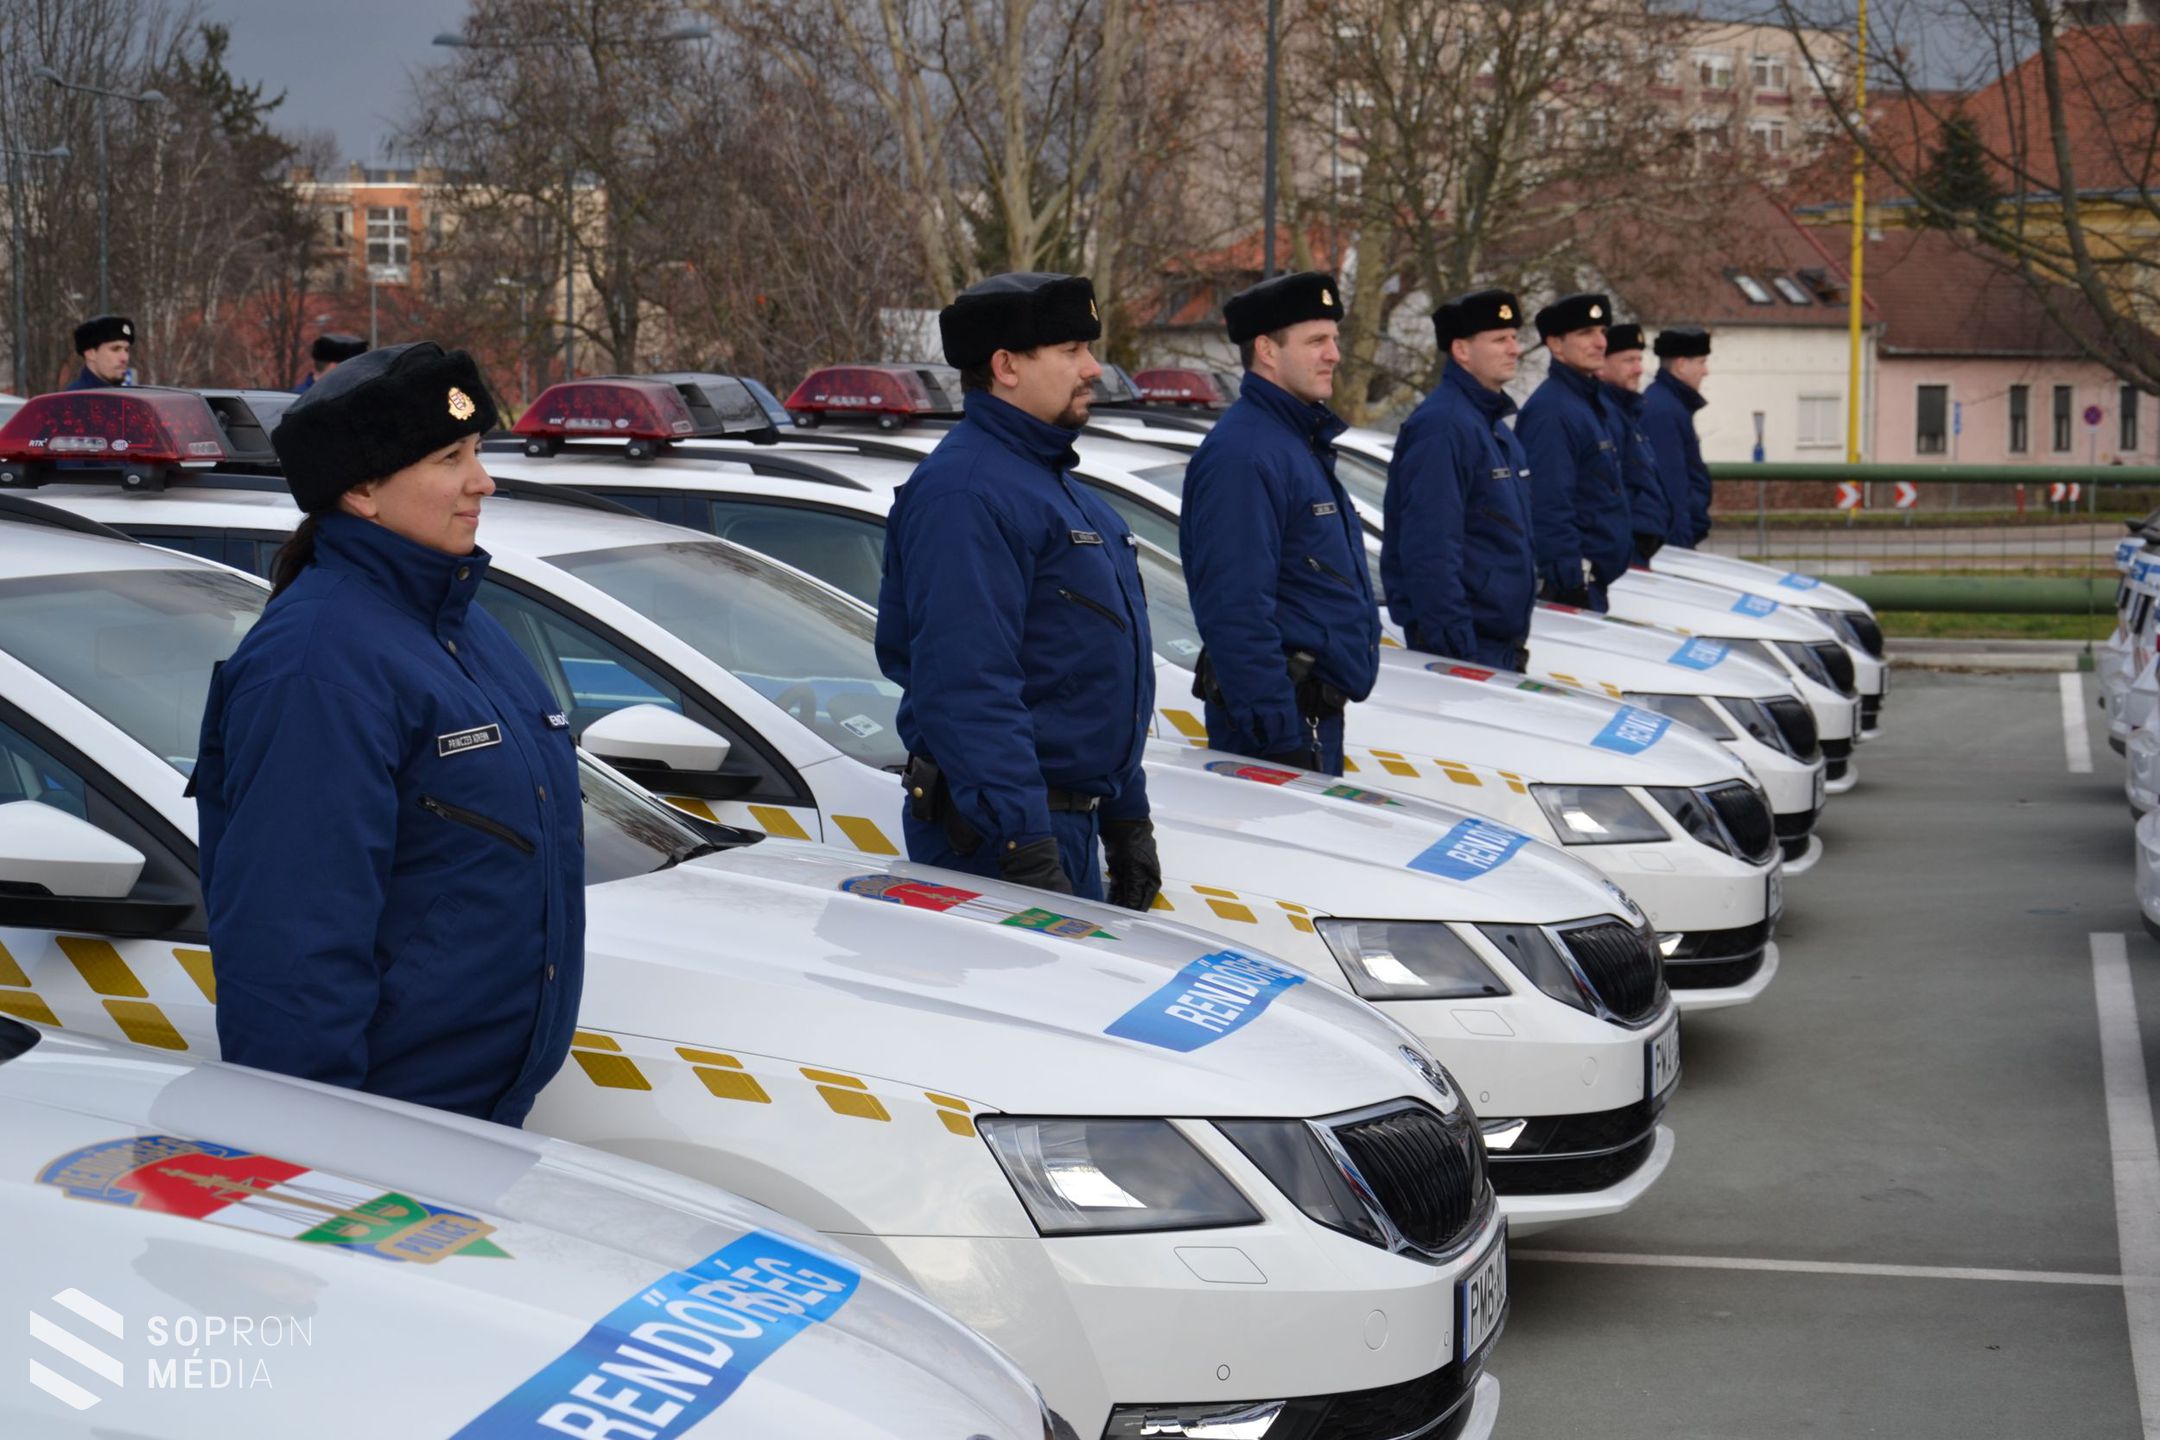 Új járőrgépjárműveket adott át Győr-Moson-Sopron megye rendőrfőkapitánya

